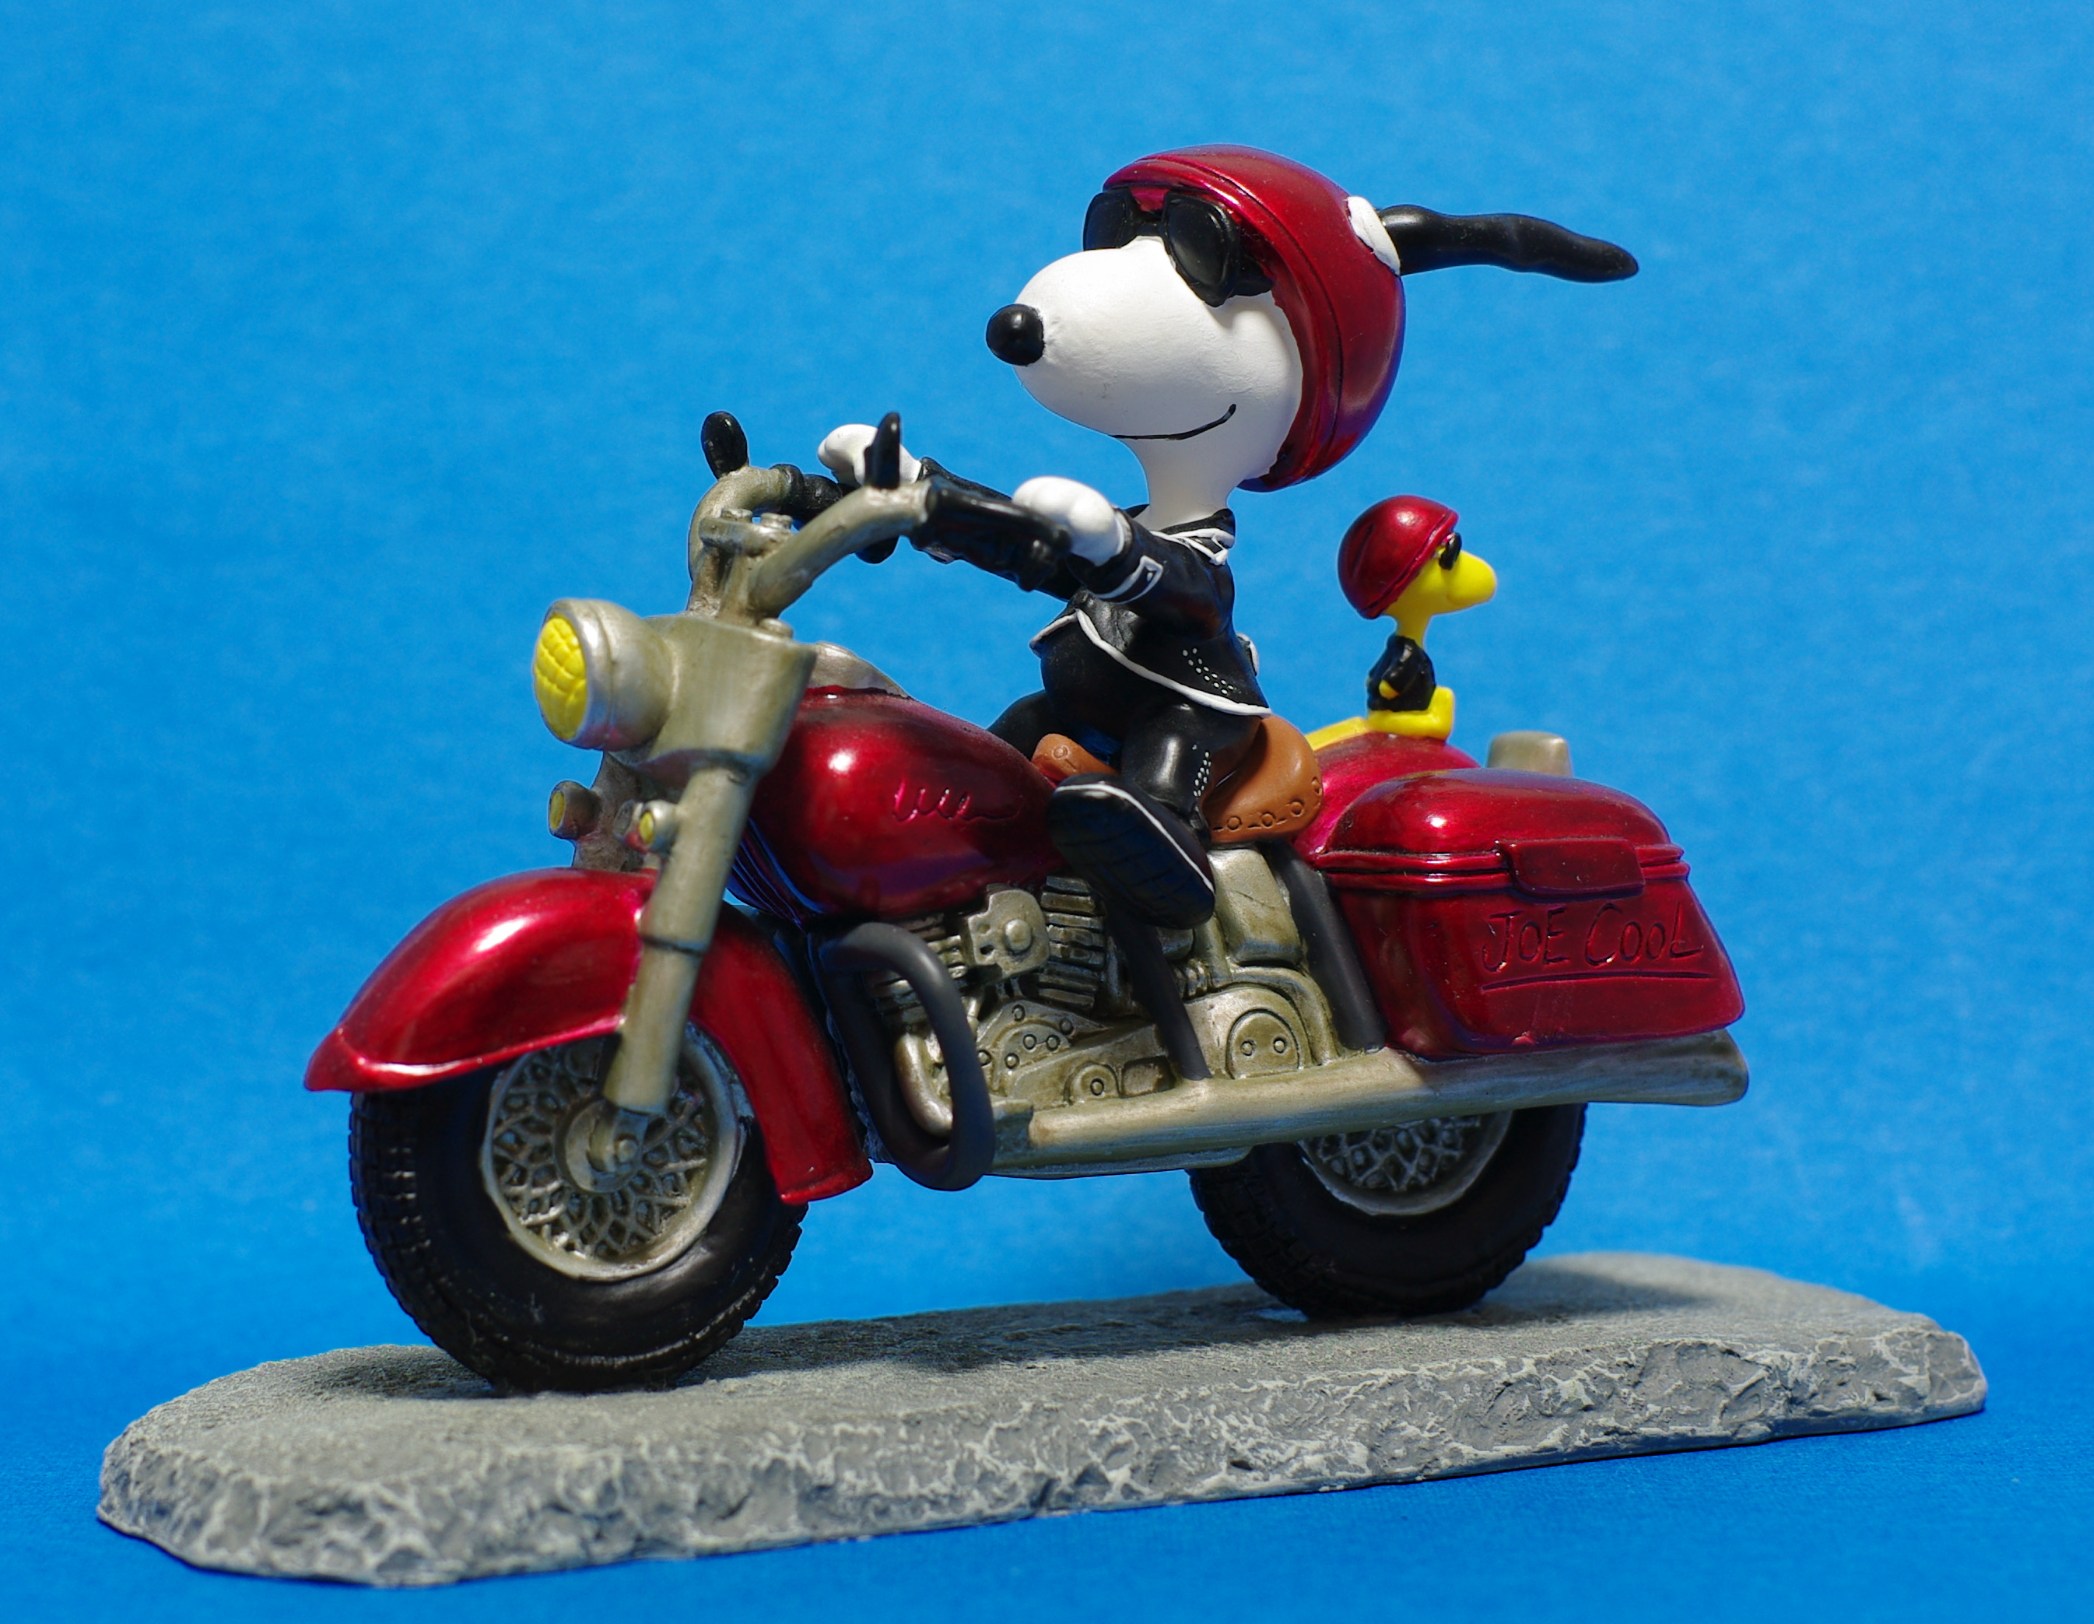 俺のバイクのライディングテクニックを見てくれ Westland スヌーピー ジョークール オン モーターサイクル Peanuts Snoopy Joe Cool On Motorcycle 24 バイクフィギュアのレビュー ジグソー レビューメディア